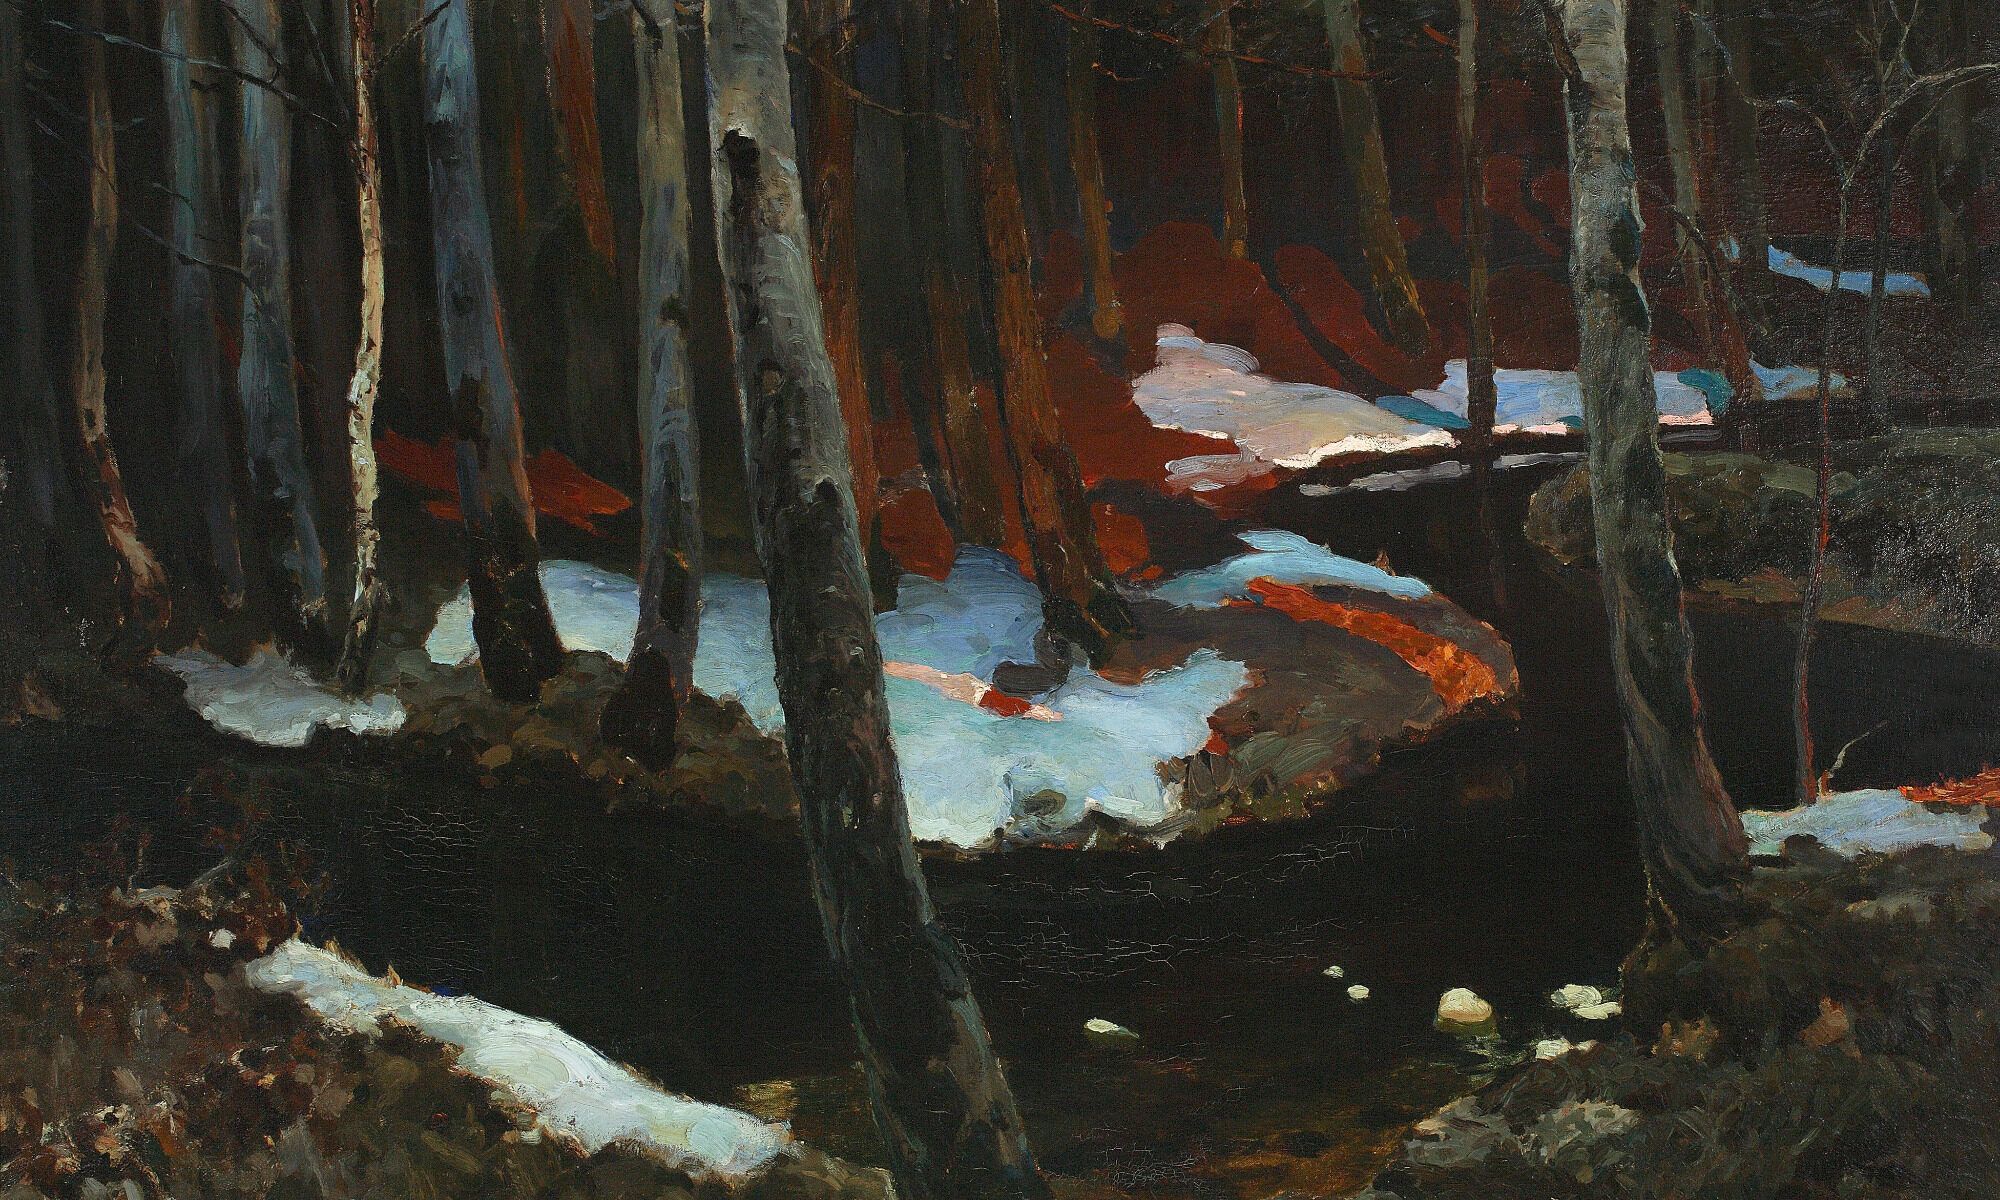 Ruisseau forestier, Ferdynand Ruszczyc, 1900.